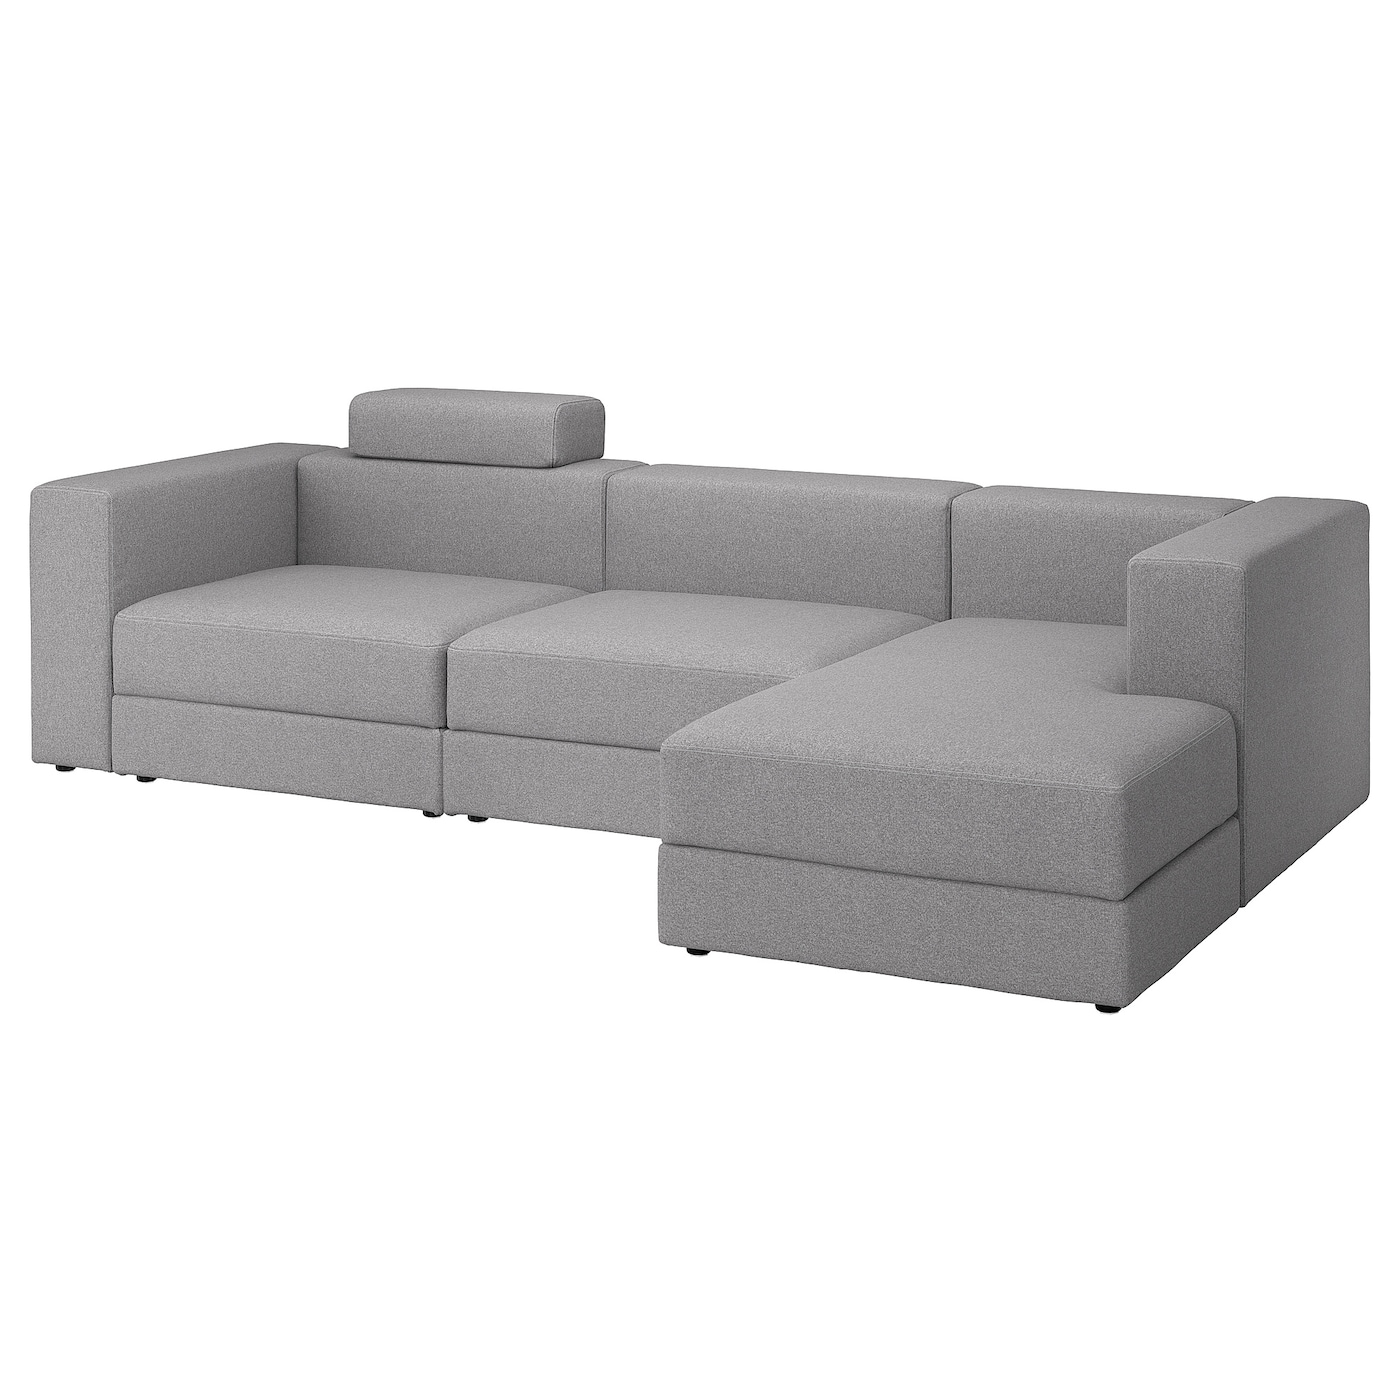 модульный диван ramart design мерсер премиум ultra ivory правый ДЖЭТТЕБО 4-местный диван + диван, правый с подголовником/Тонеруд серый JÄTTEBO IKEA